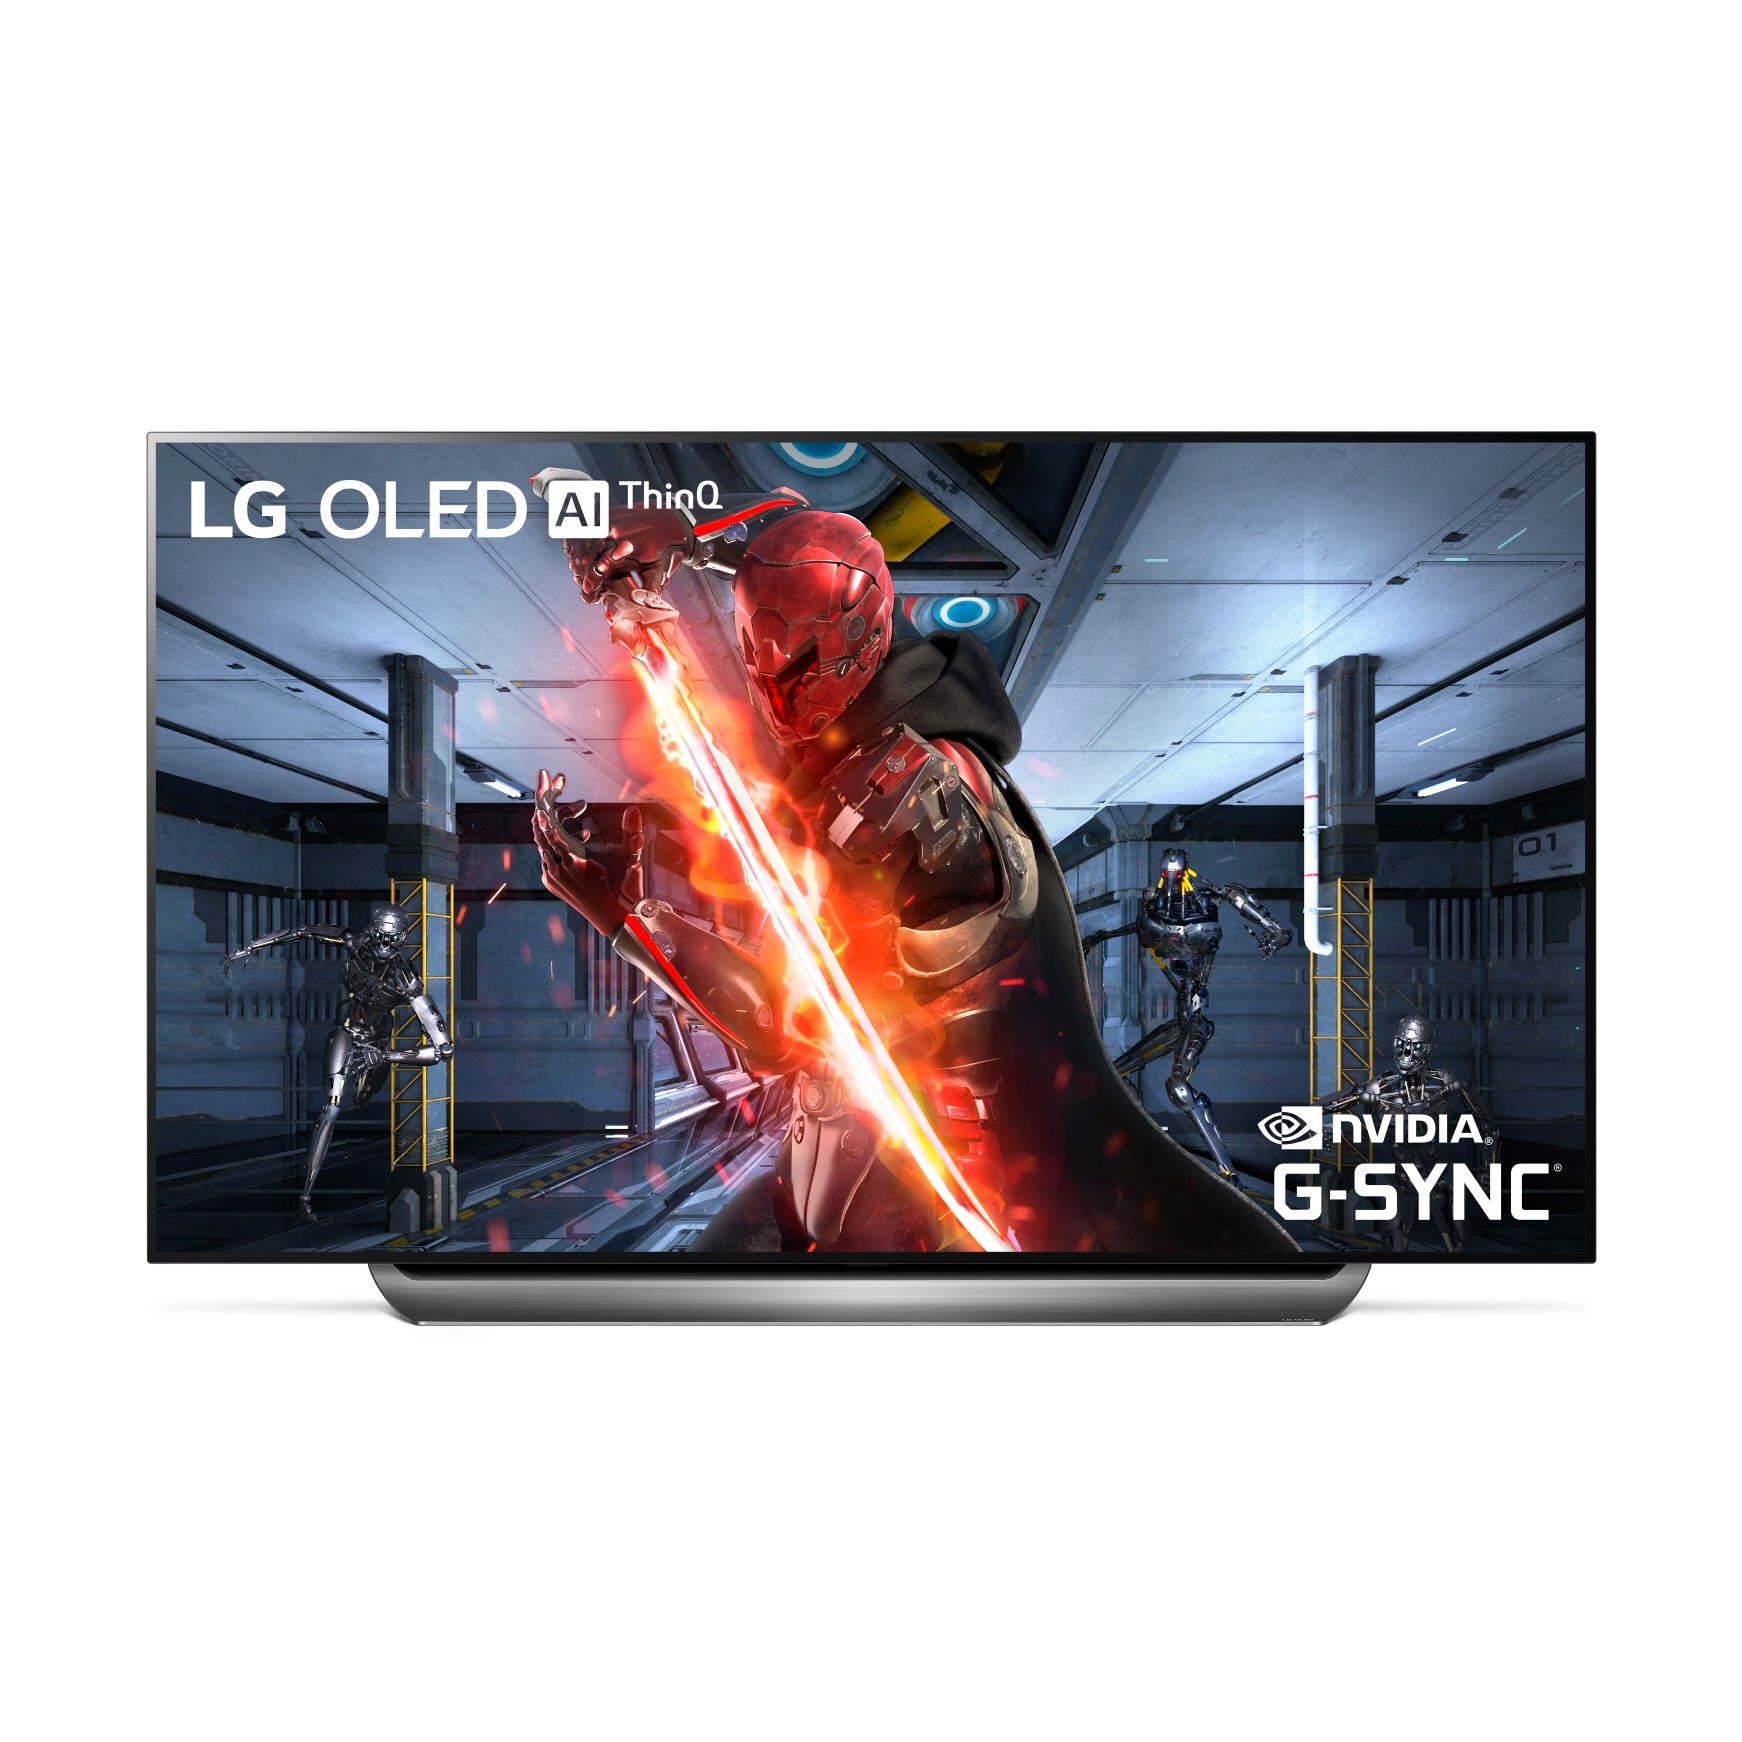 Immagine pubblicata in relazione al seguente contenuto: LG aggiunge il supporto della tecnologia NVIDIA G-SYNC ai televisori OLED 4K | Nome immagine: news29970_LG-OLED-4K-TV-G-SYNC_1.jpg